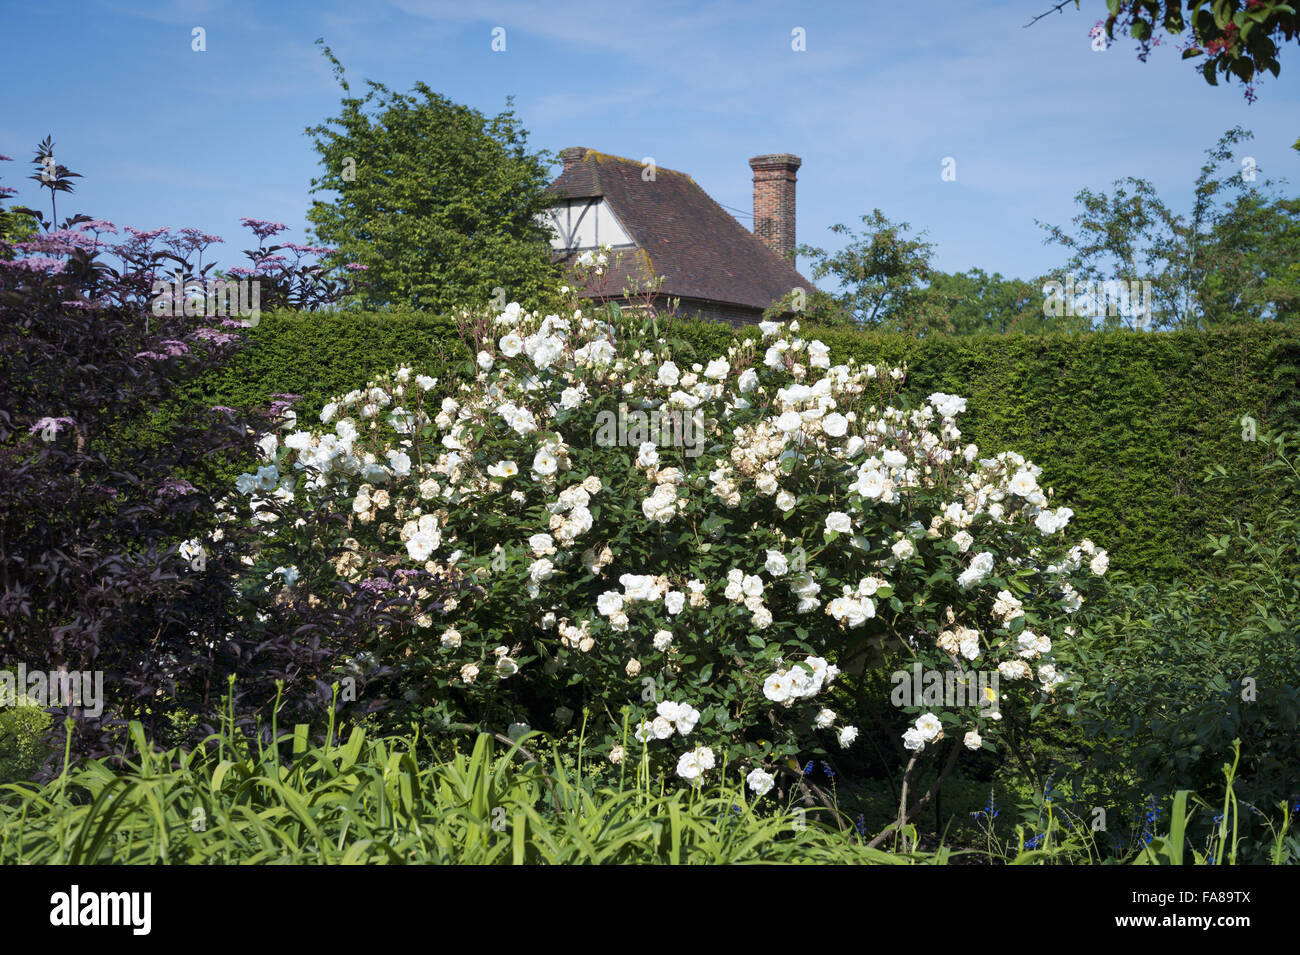 Die Gärten im Juli auf Sissinghurst Castle, Kent. Sissinghurst erlangte internationale Bekanntheit in den 1930er Jahren, Vita Sackville-West und Harold Nicolson dort einen Garten erstellt. Stockfoto